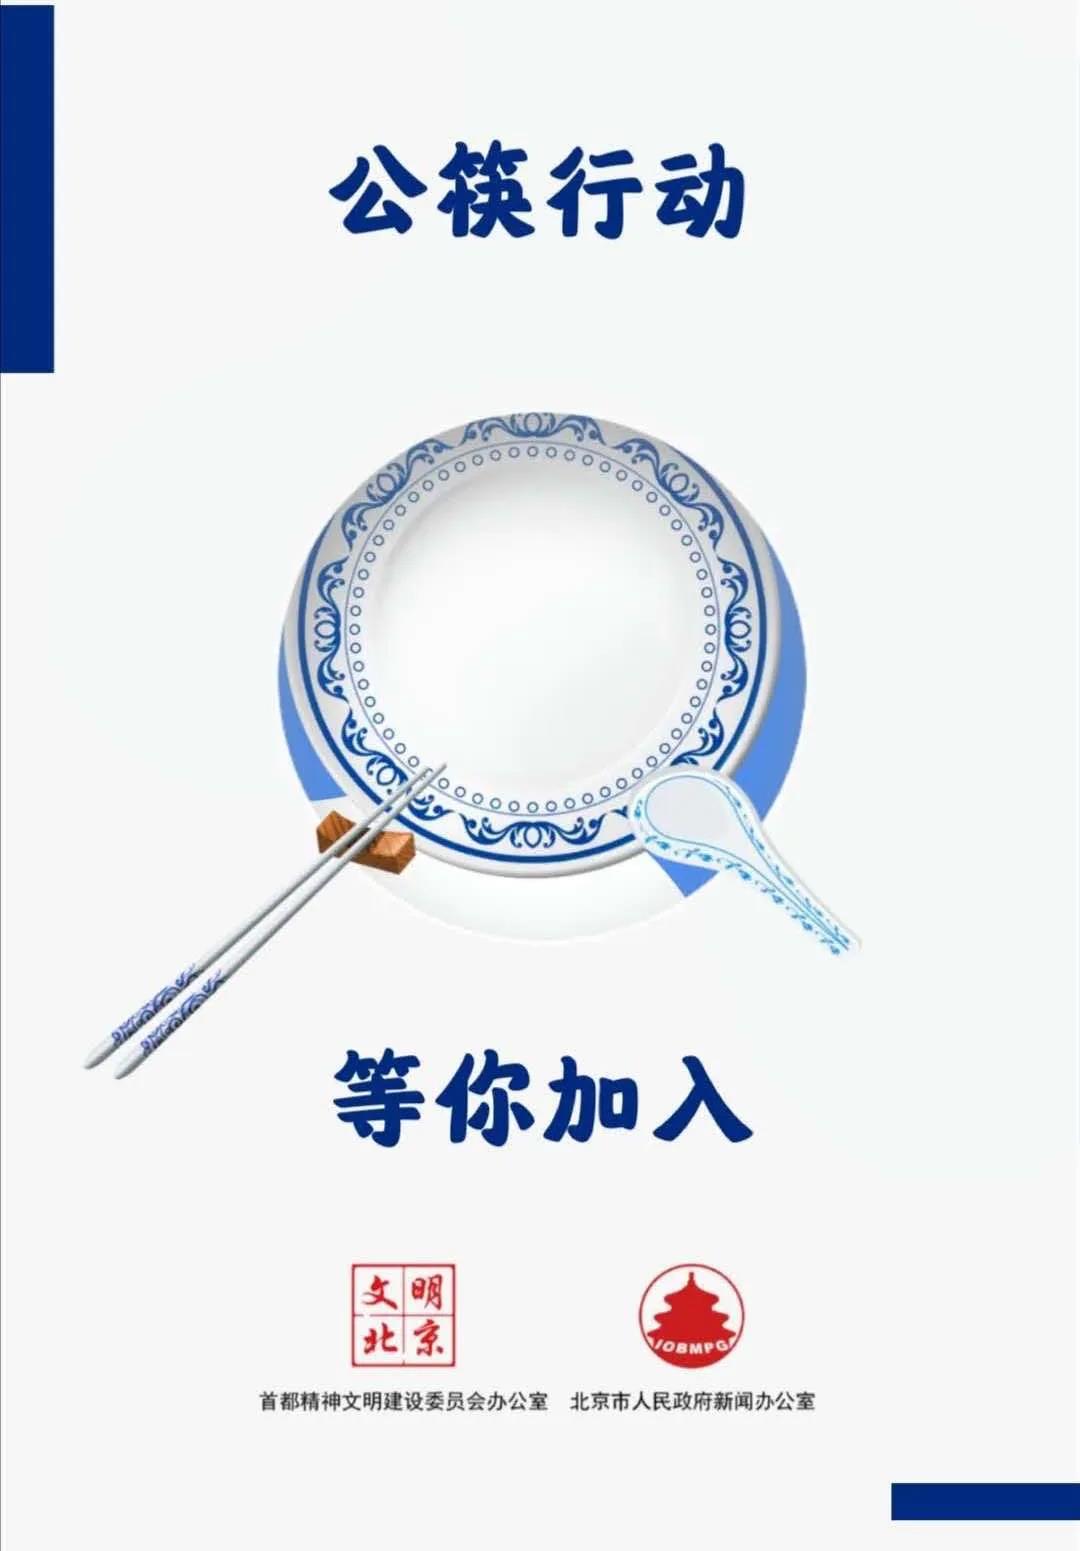 公勺公筷  公益广告4.jpg